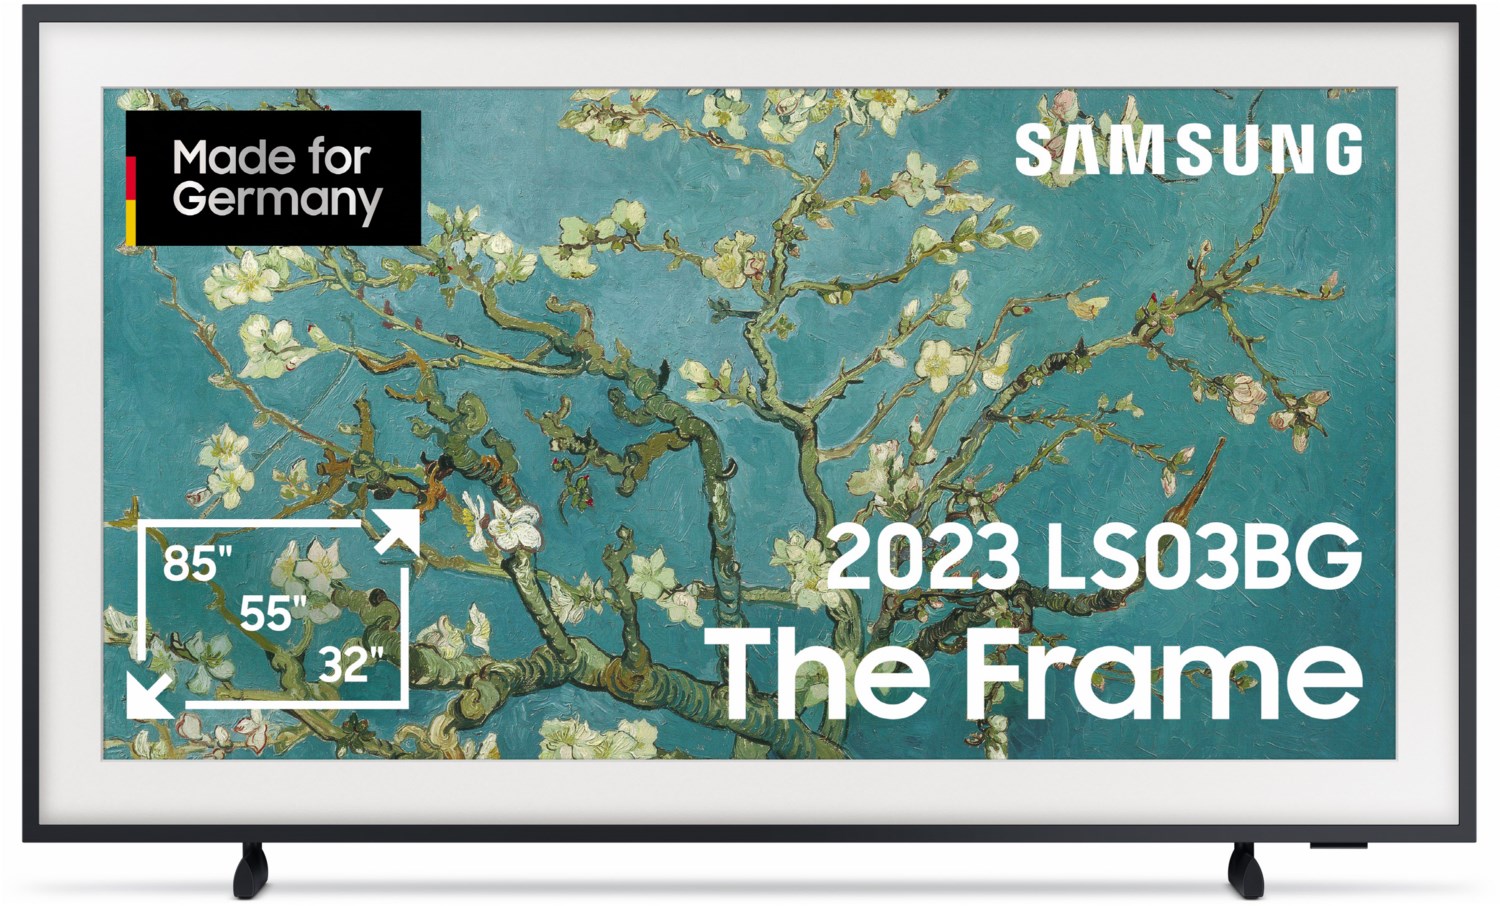 Samsung QLED 4K The Frame 43 Zoll Fernseher, mattes Display, austauschbare Rahmen, Art Mode, Smart TV [2023]